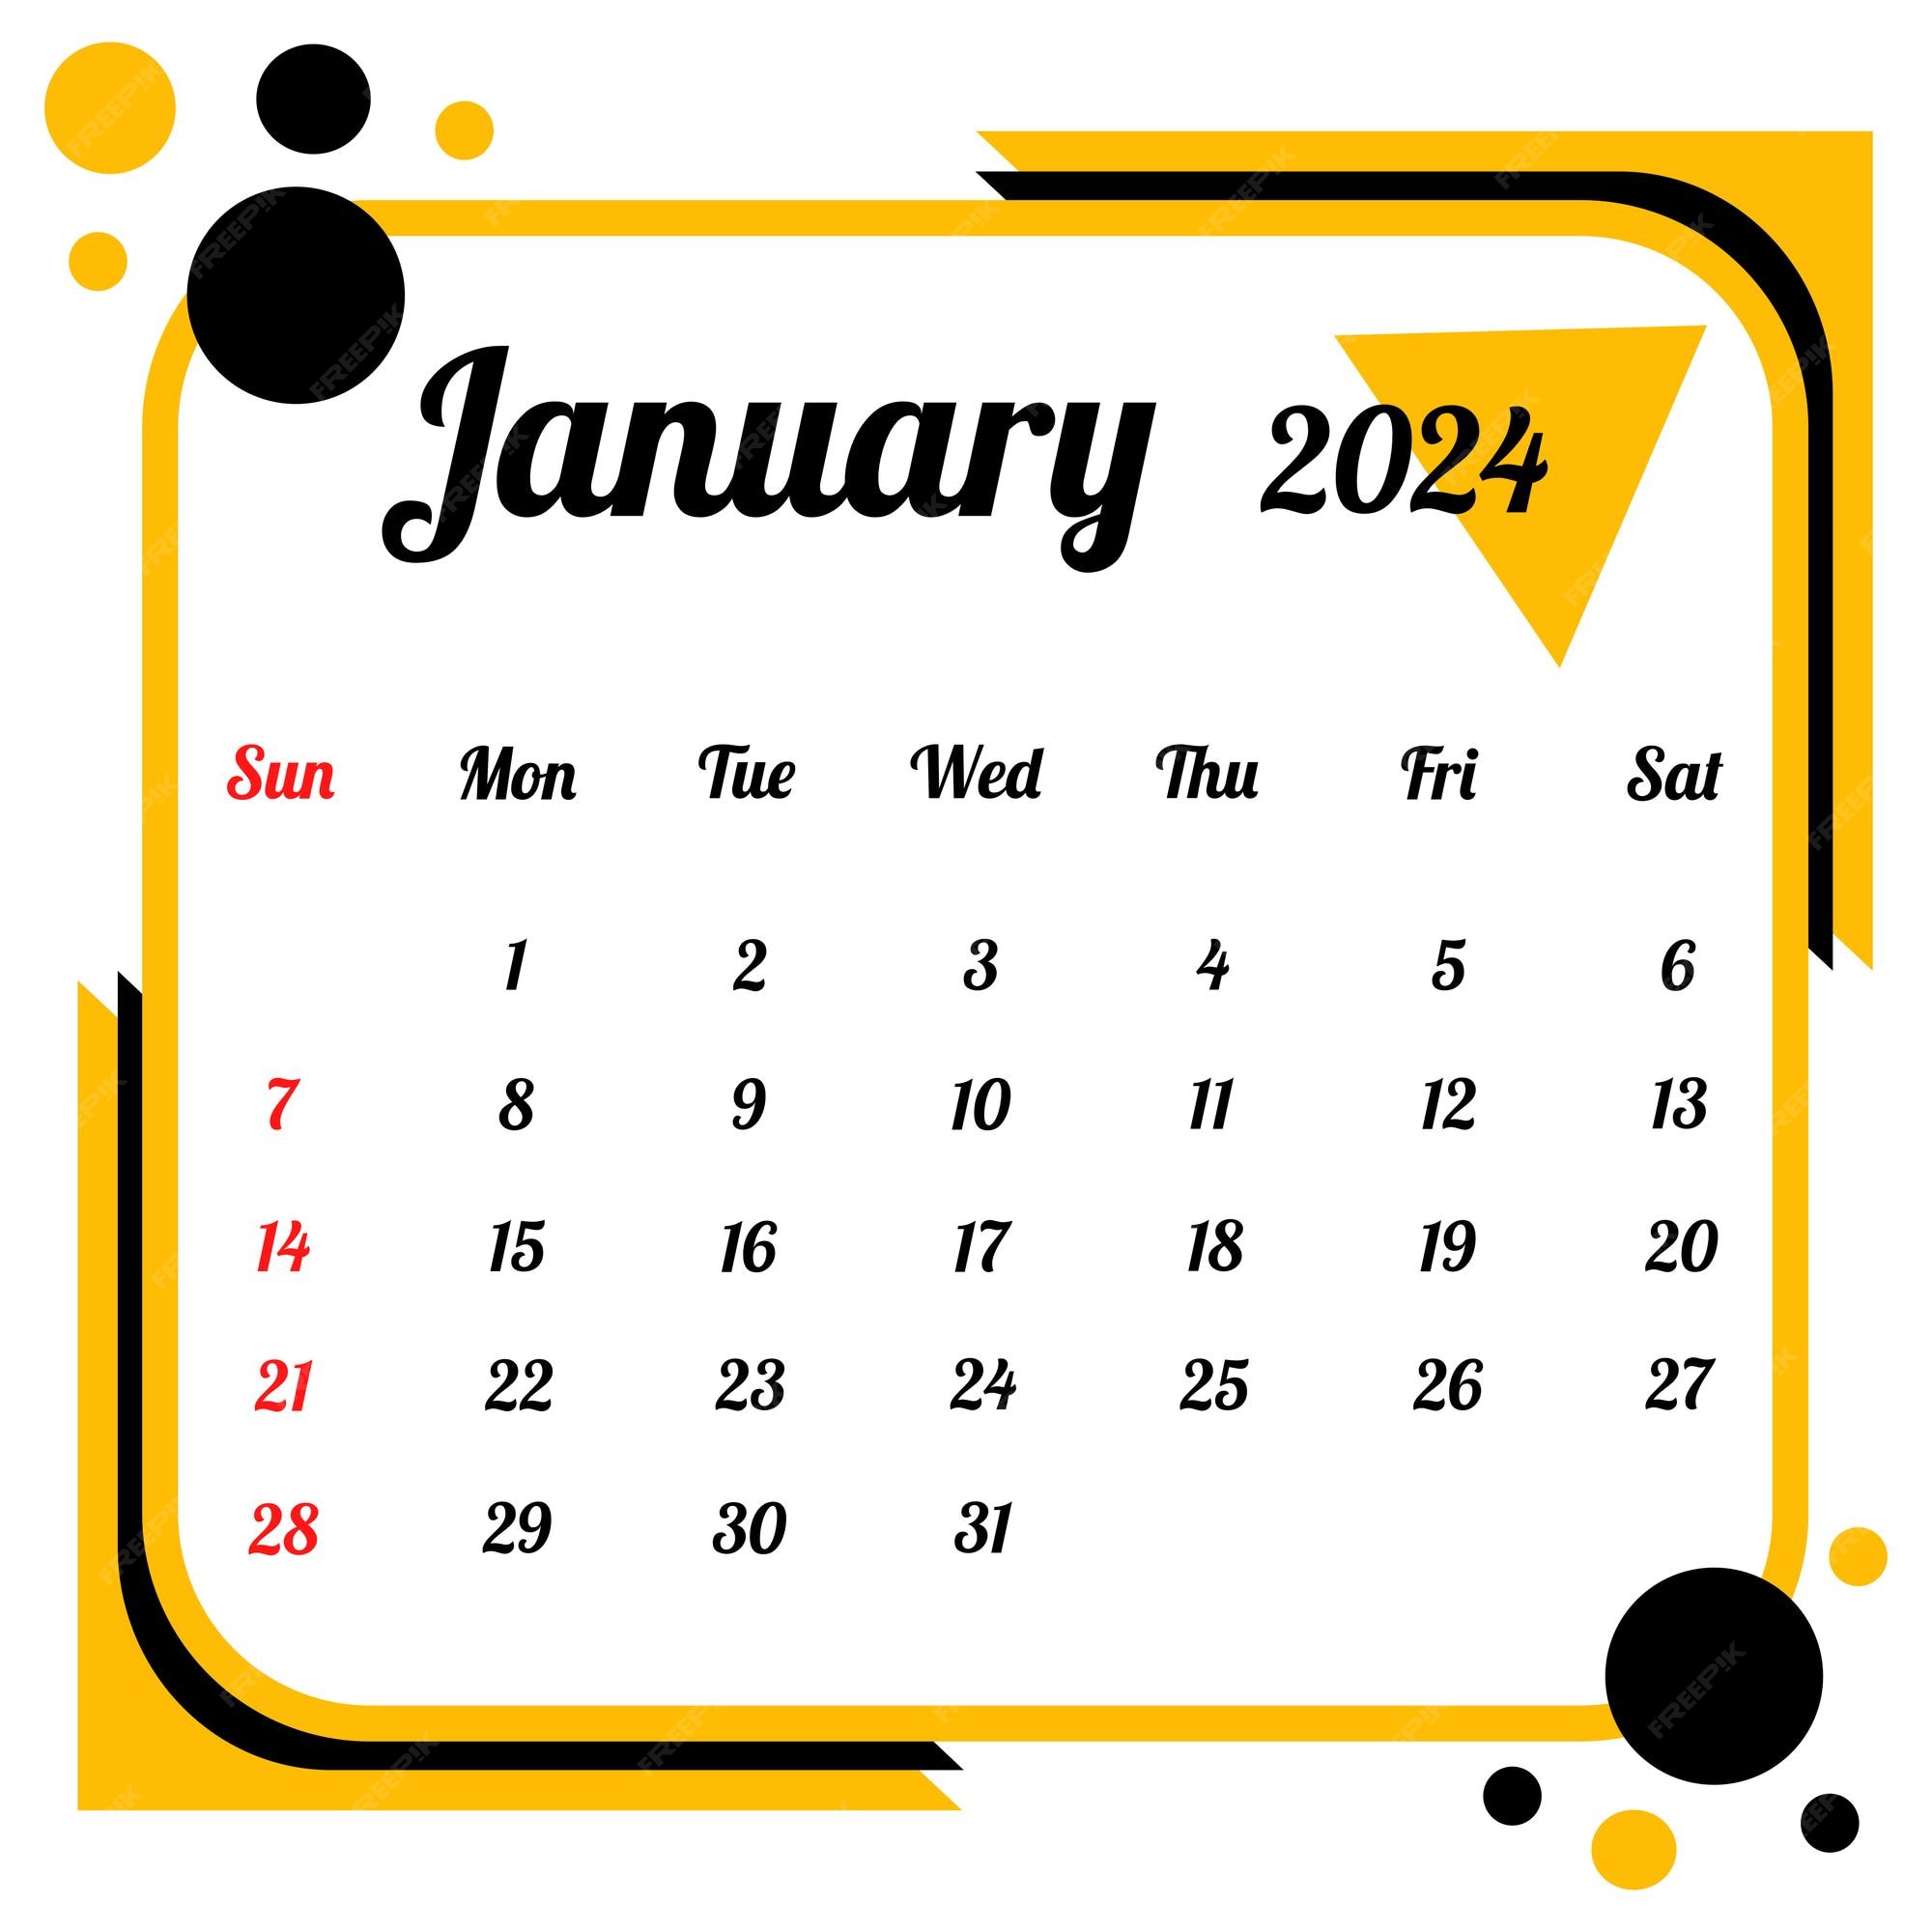 Koka - Calendário da Temporada de Janeiro de 2024 Revelado pela